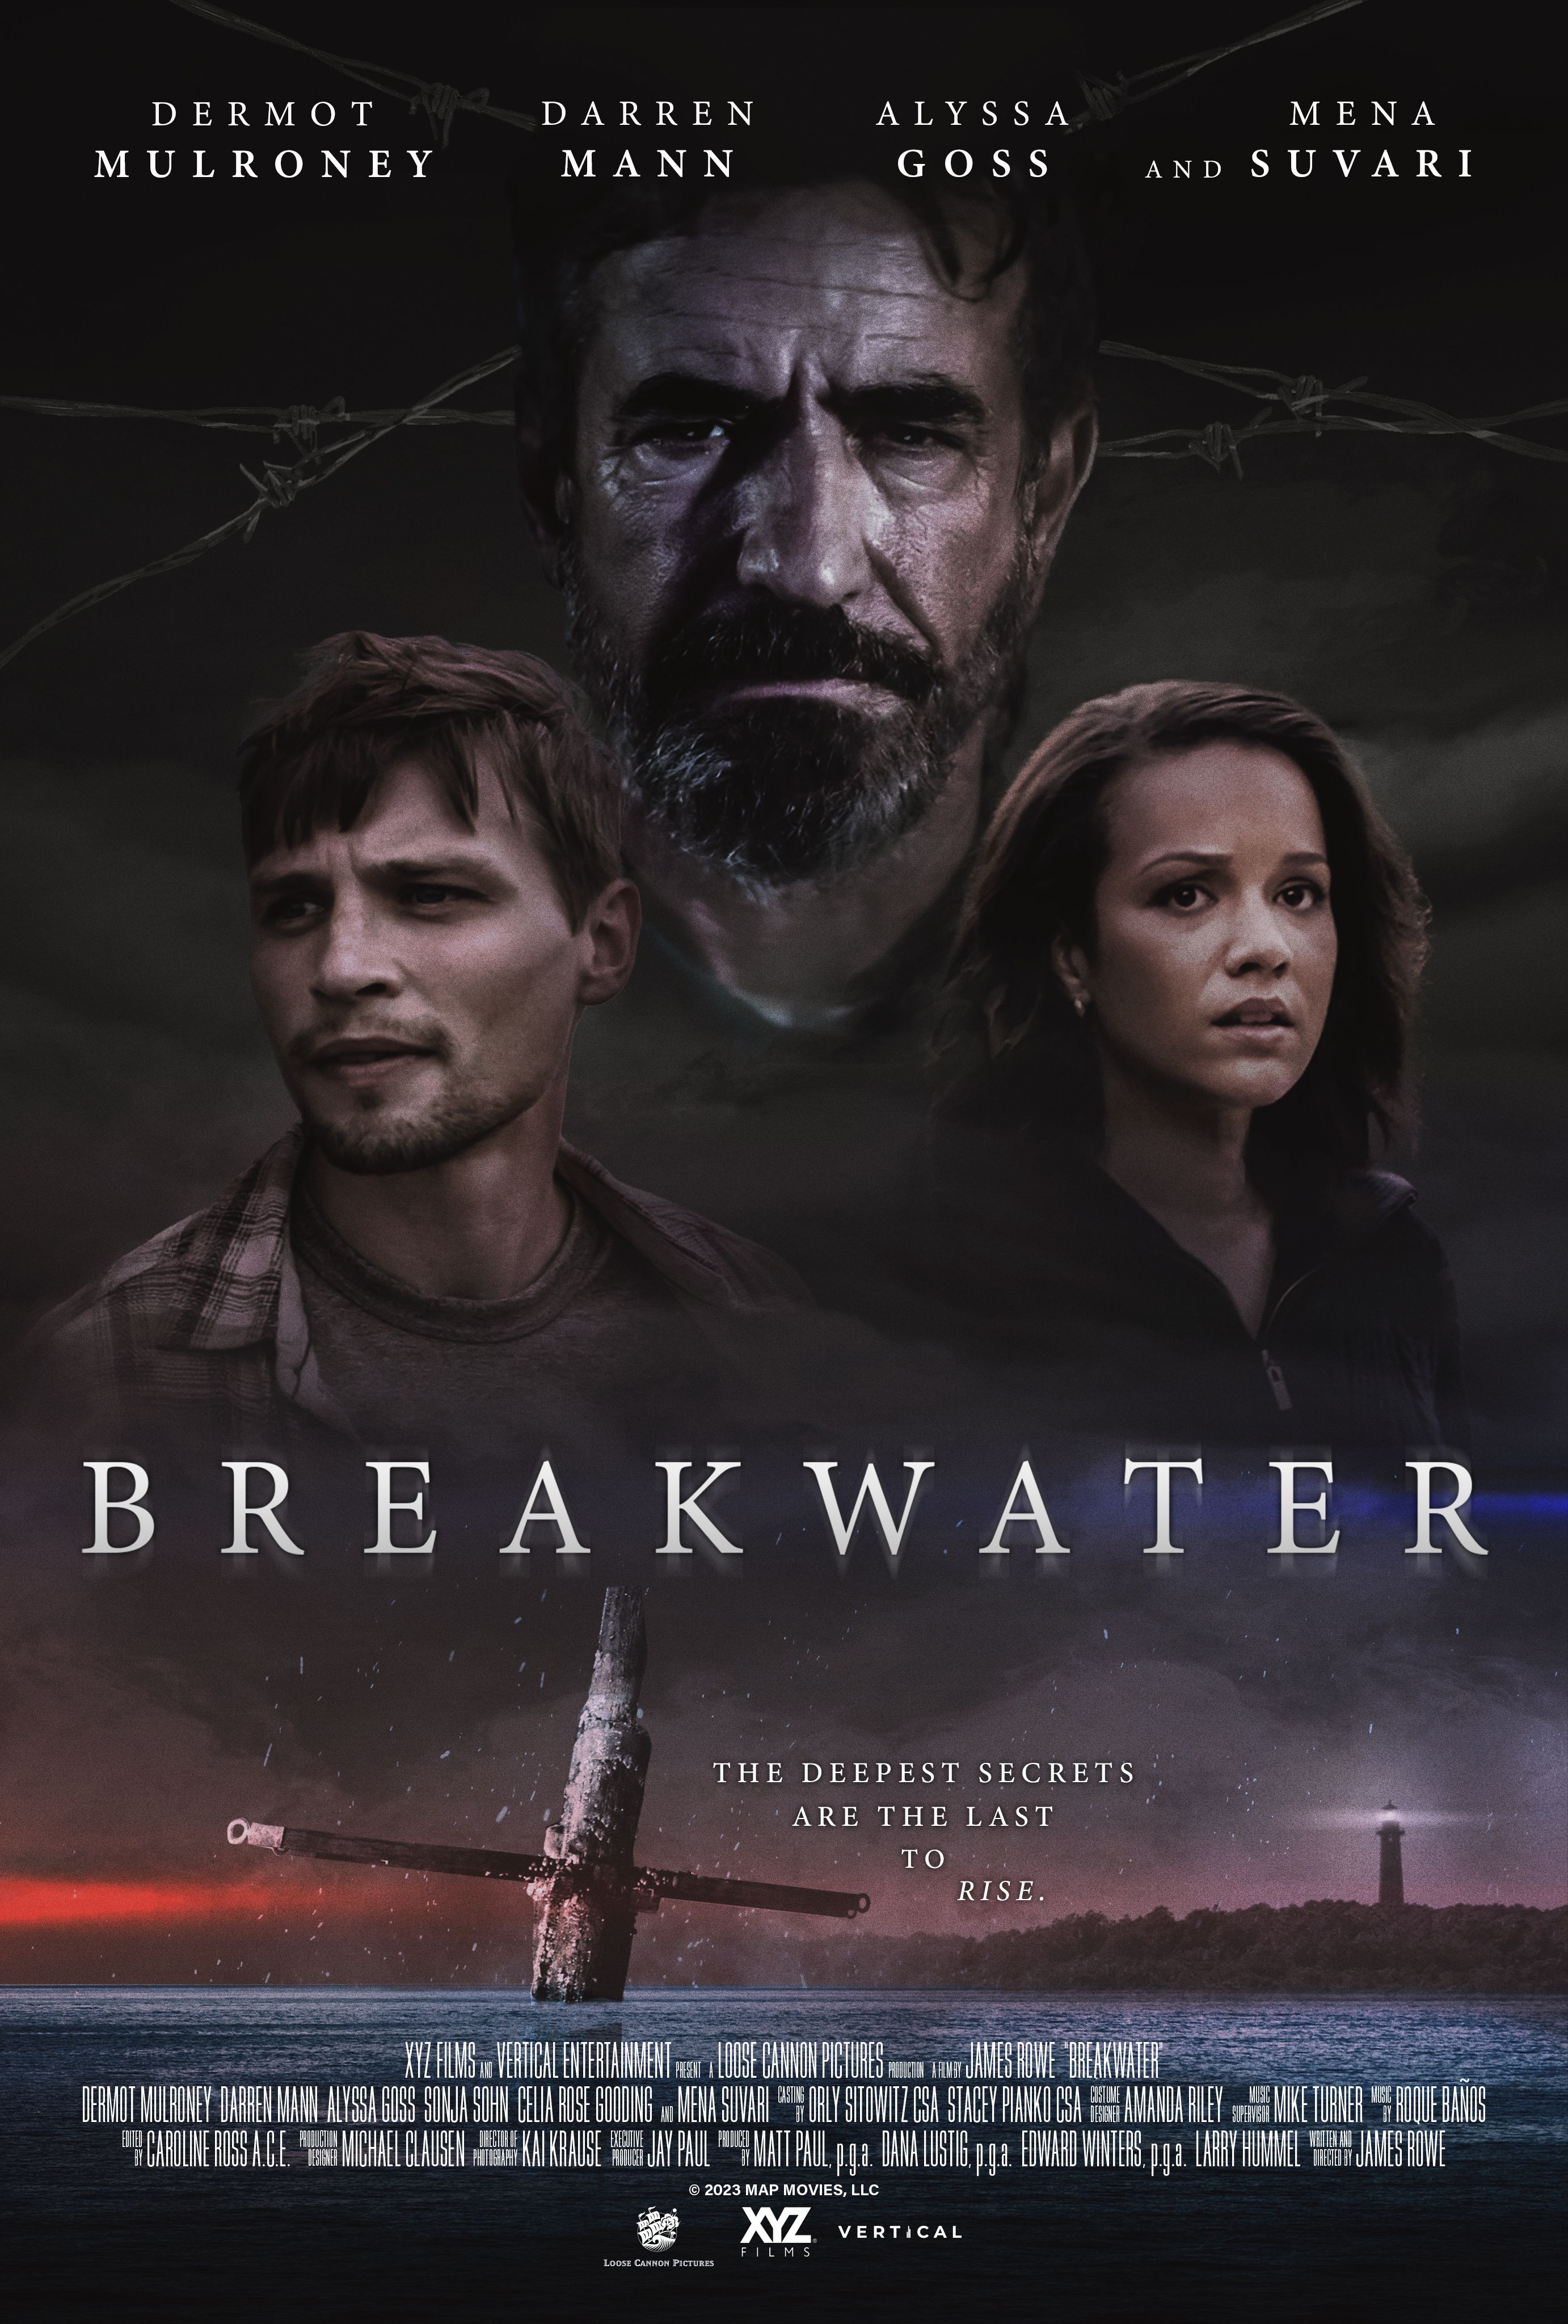 Bande-annonce de « Breakwater » — Dermot Mulroney est un homme en quête de vengeance